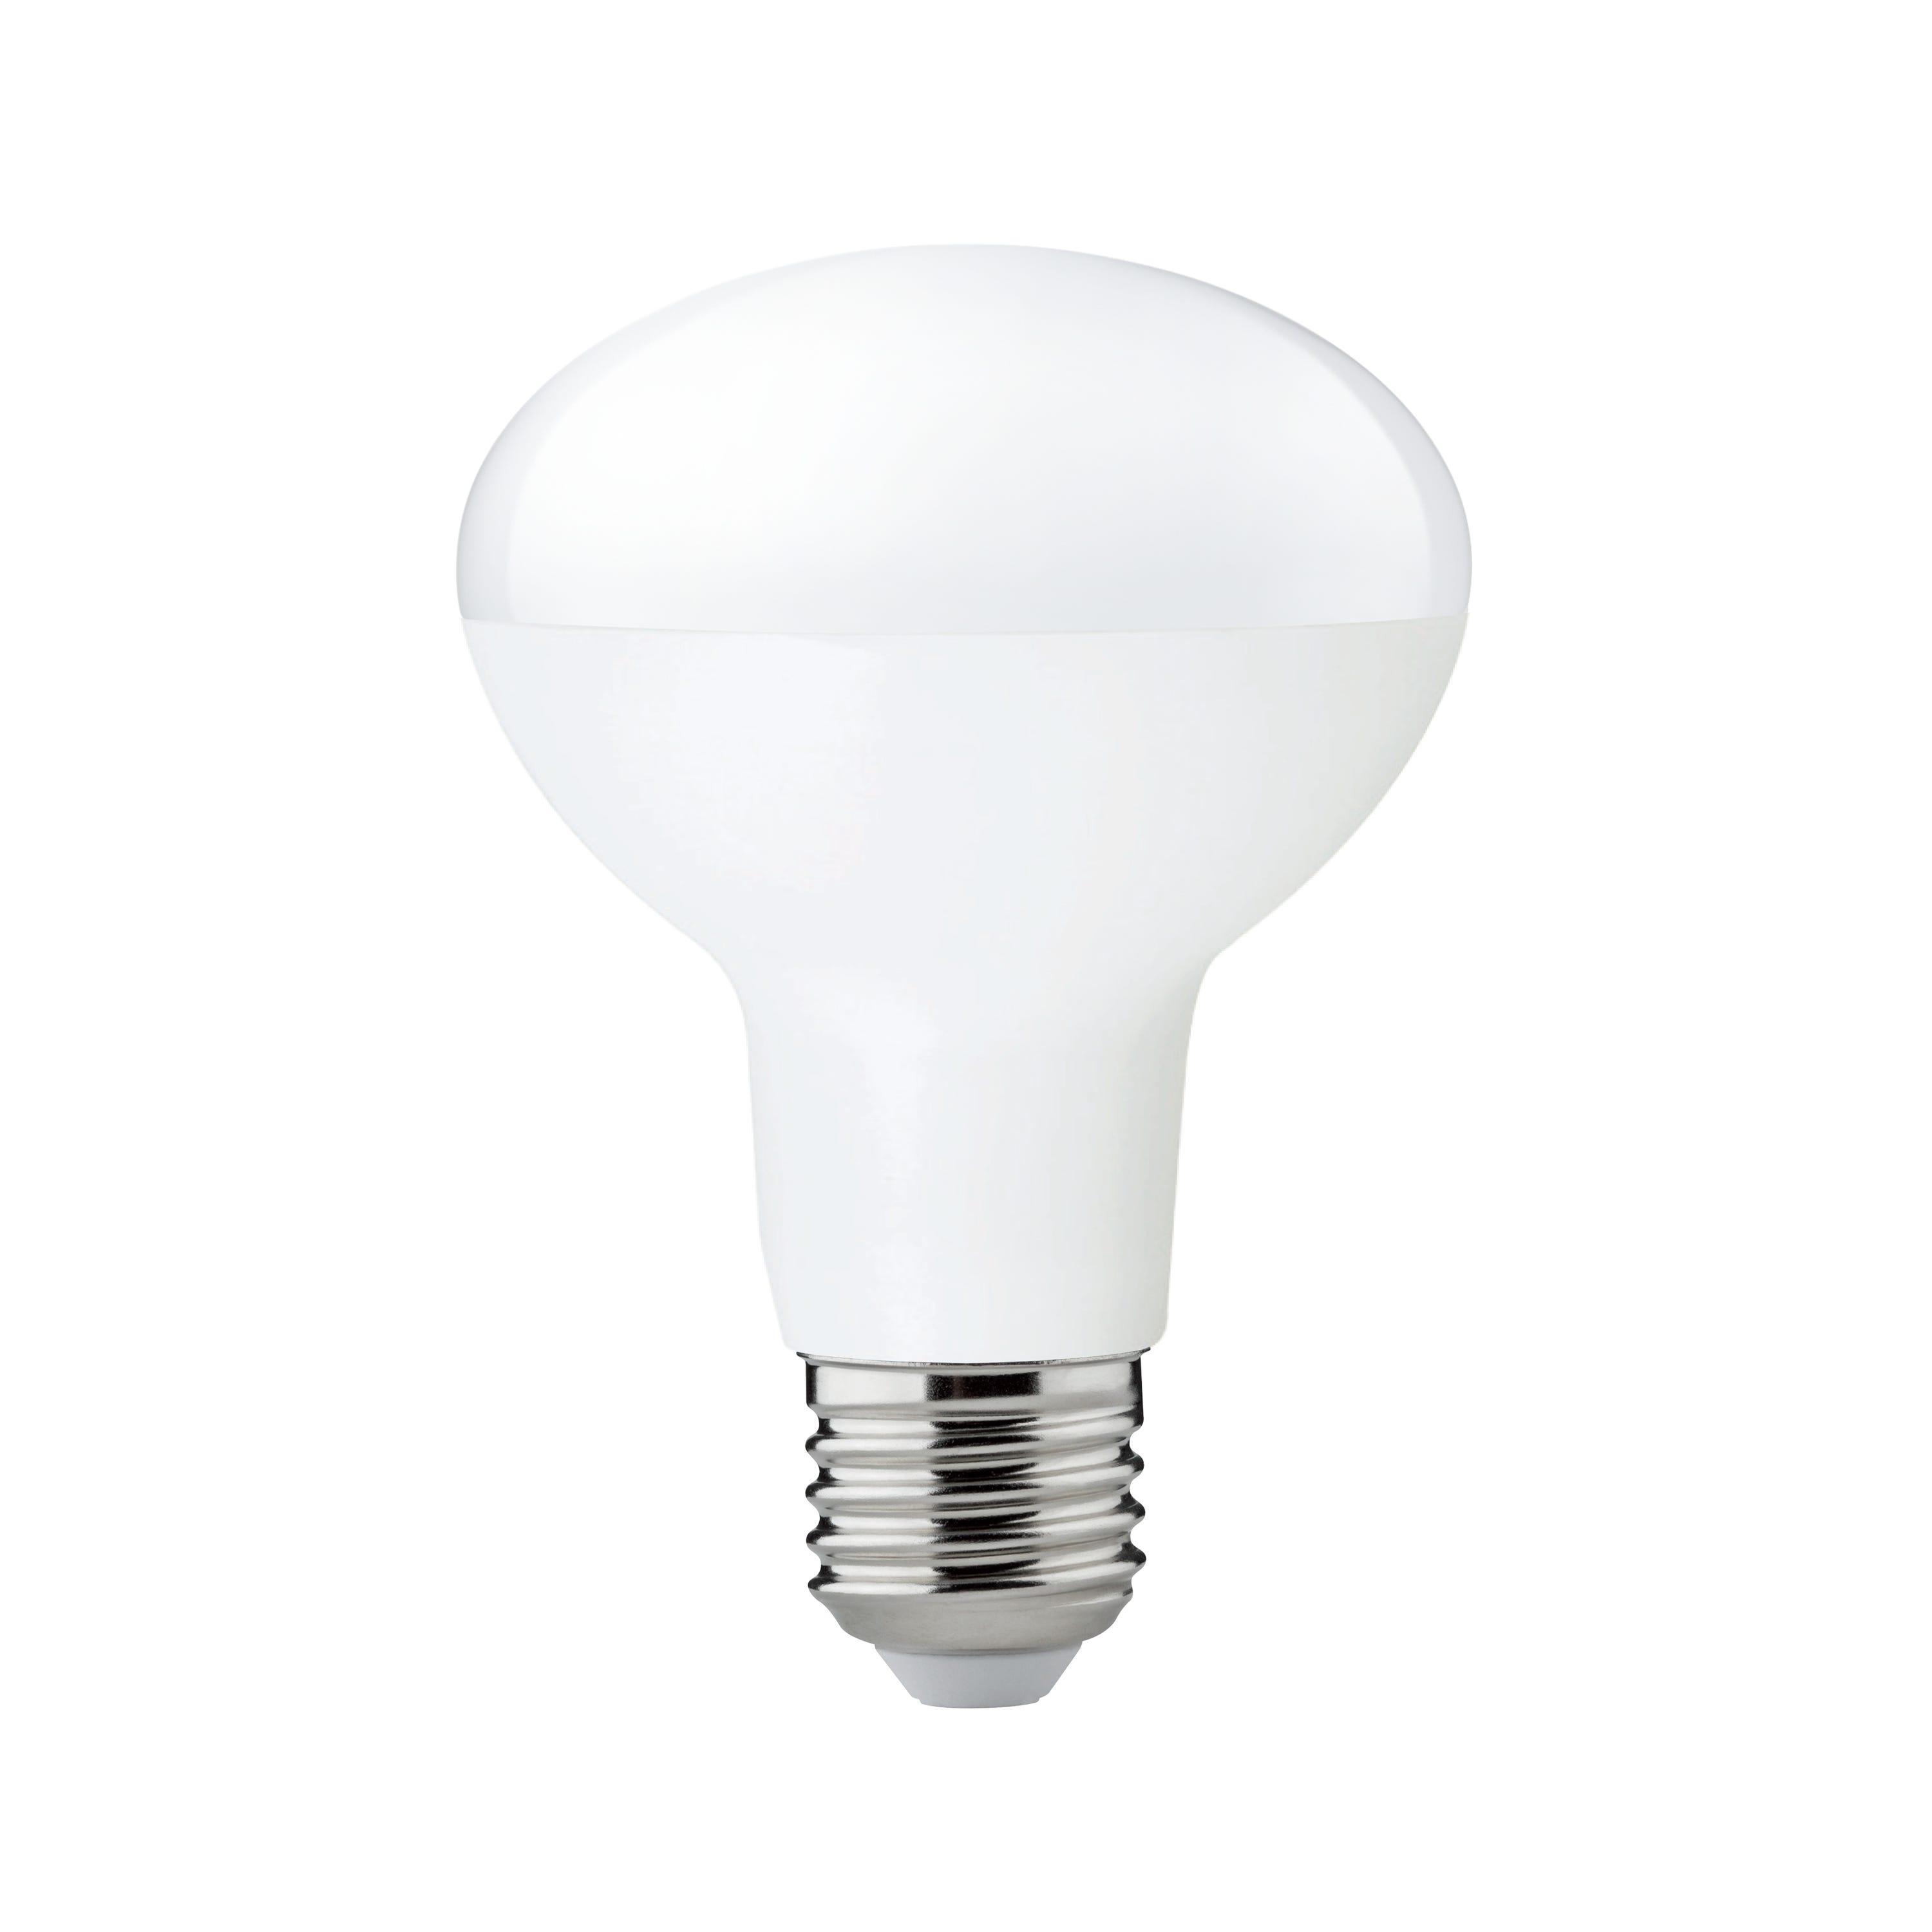 Lampadina Faretto LED Attacco G4 1,5W Luce Bianco Caldo Calda